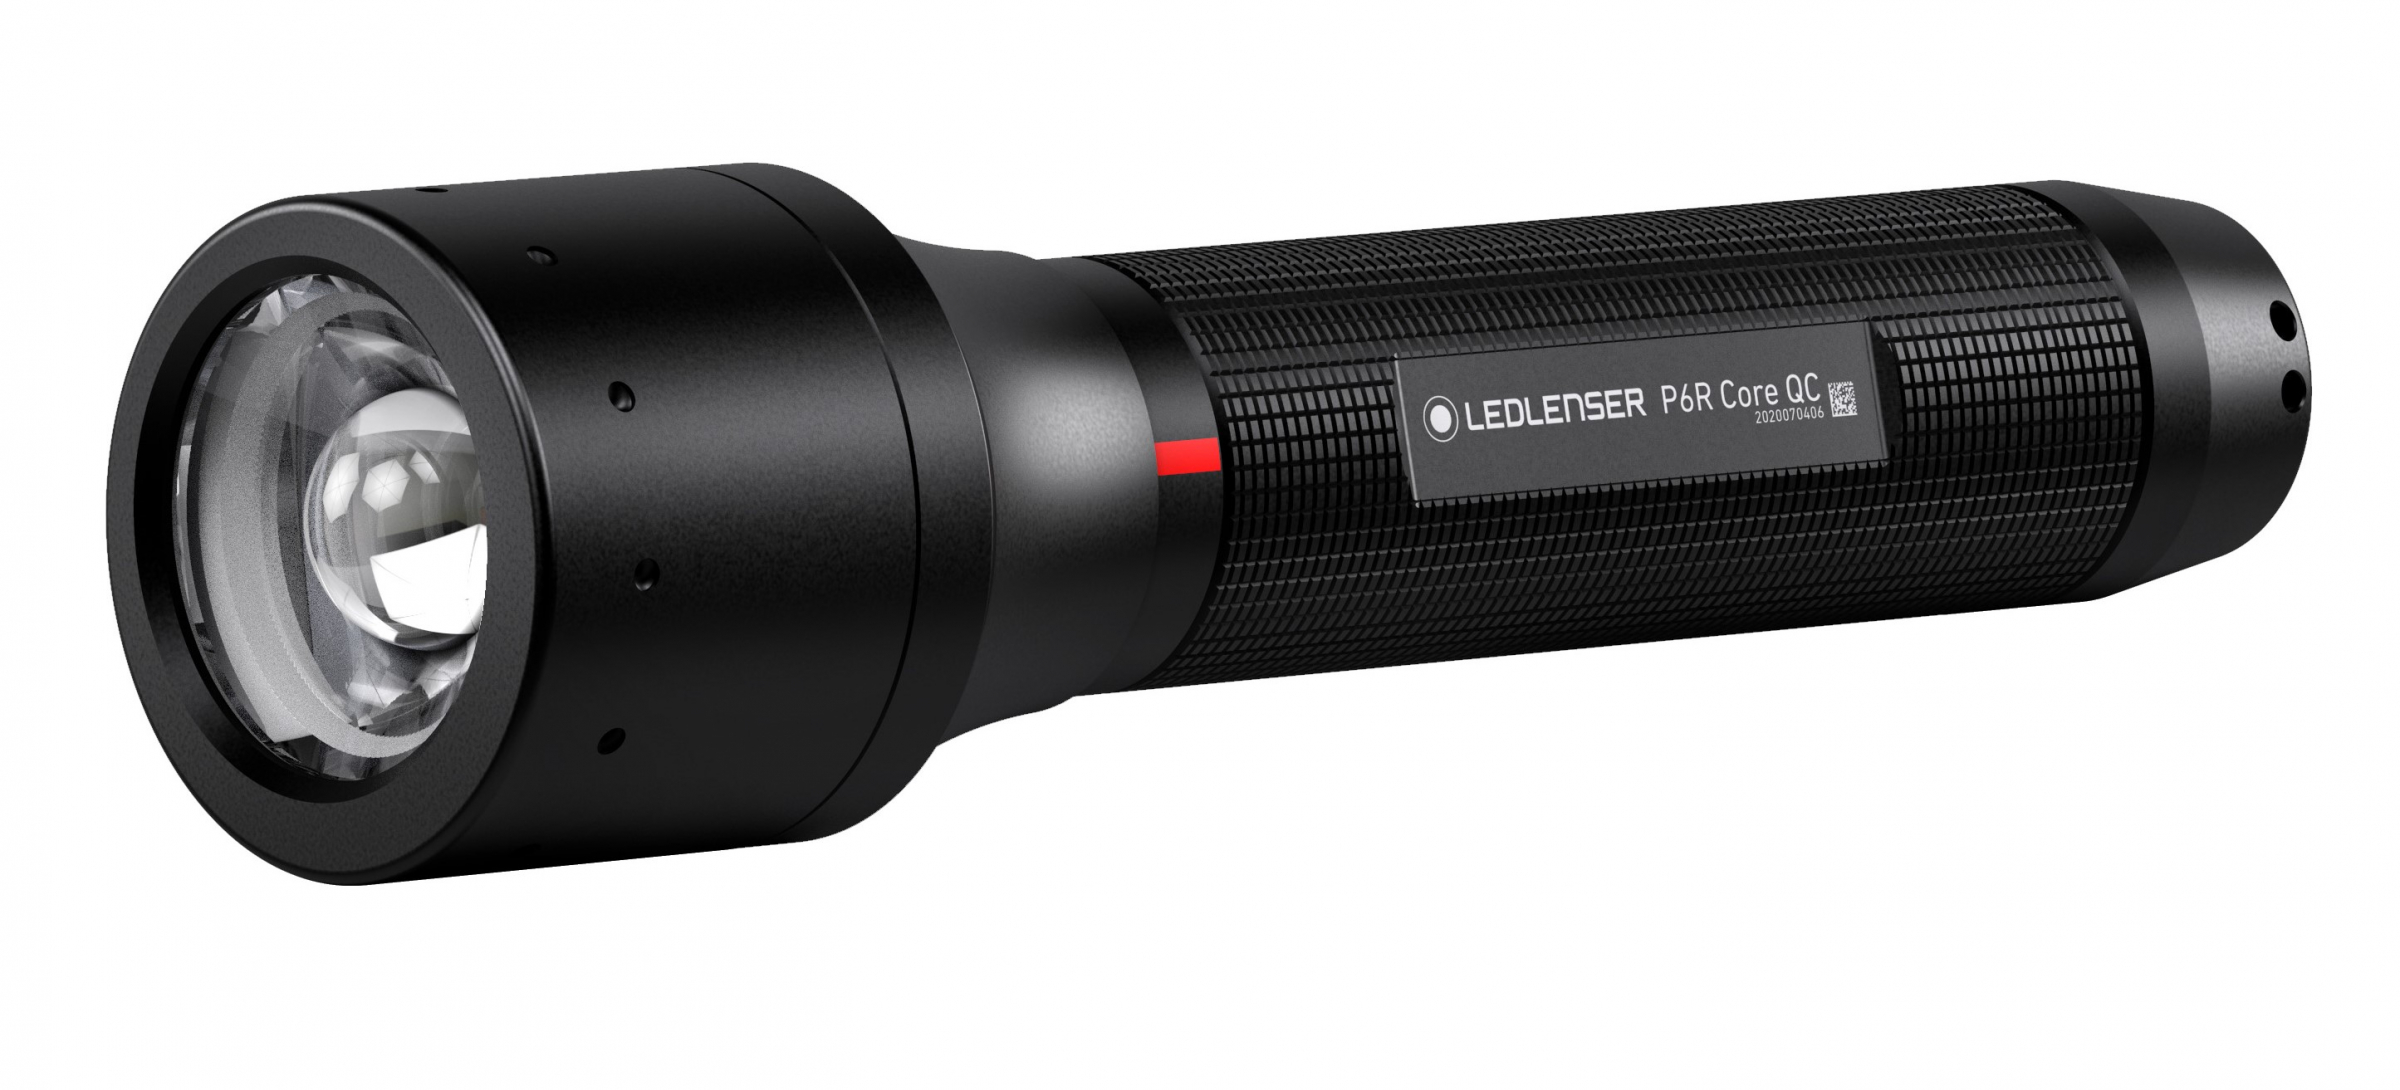 Led Lenser P6R Core QC - Multicolor LED